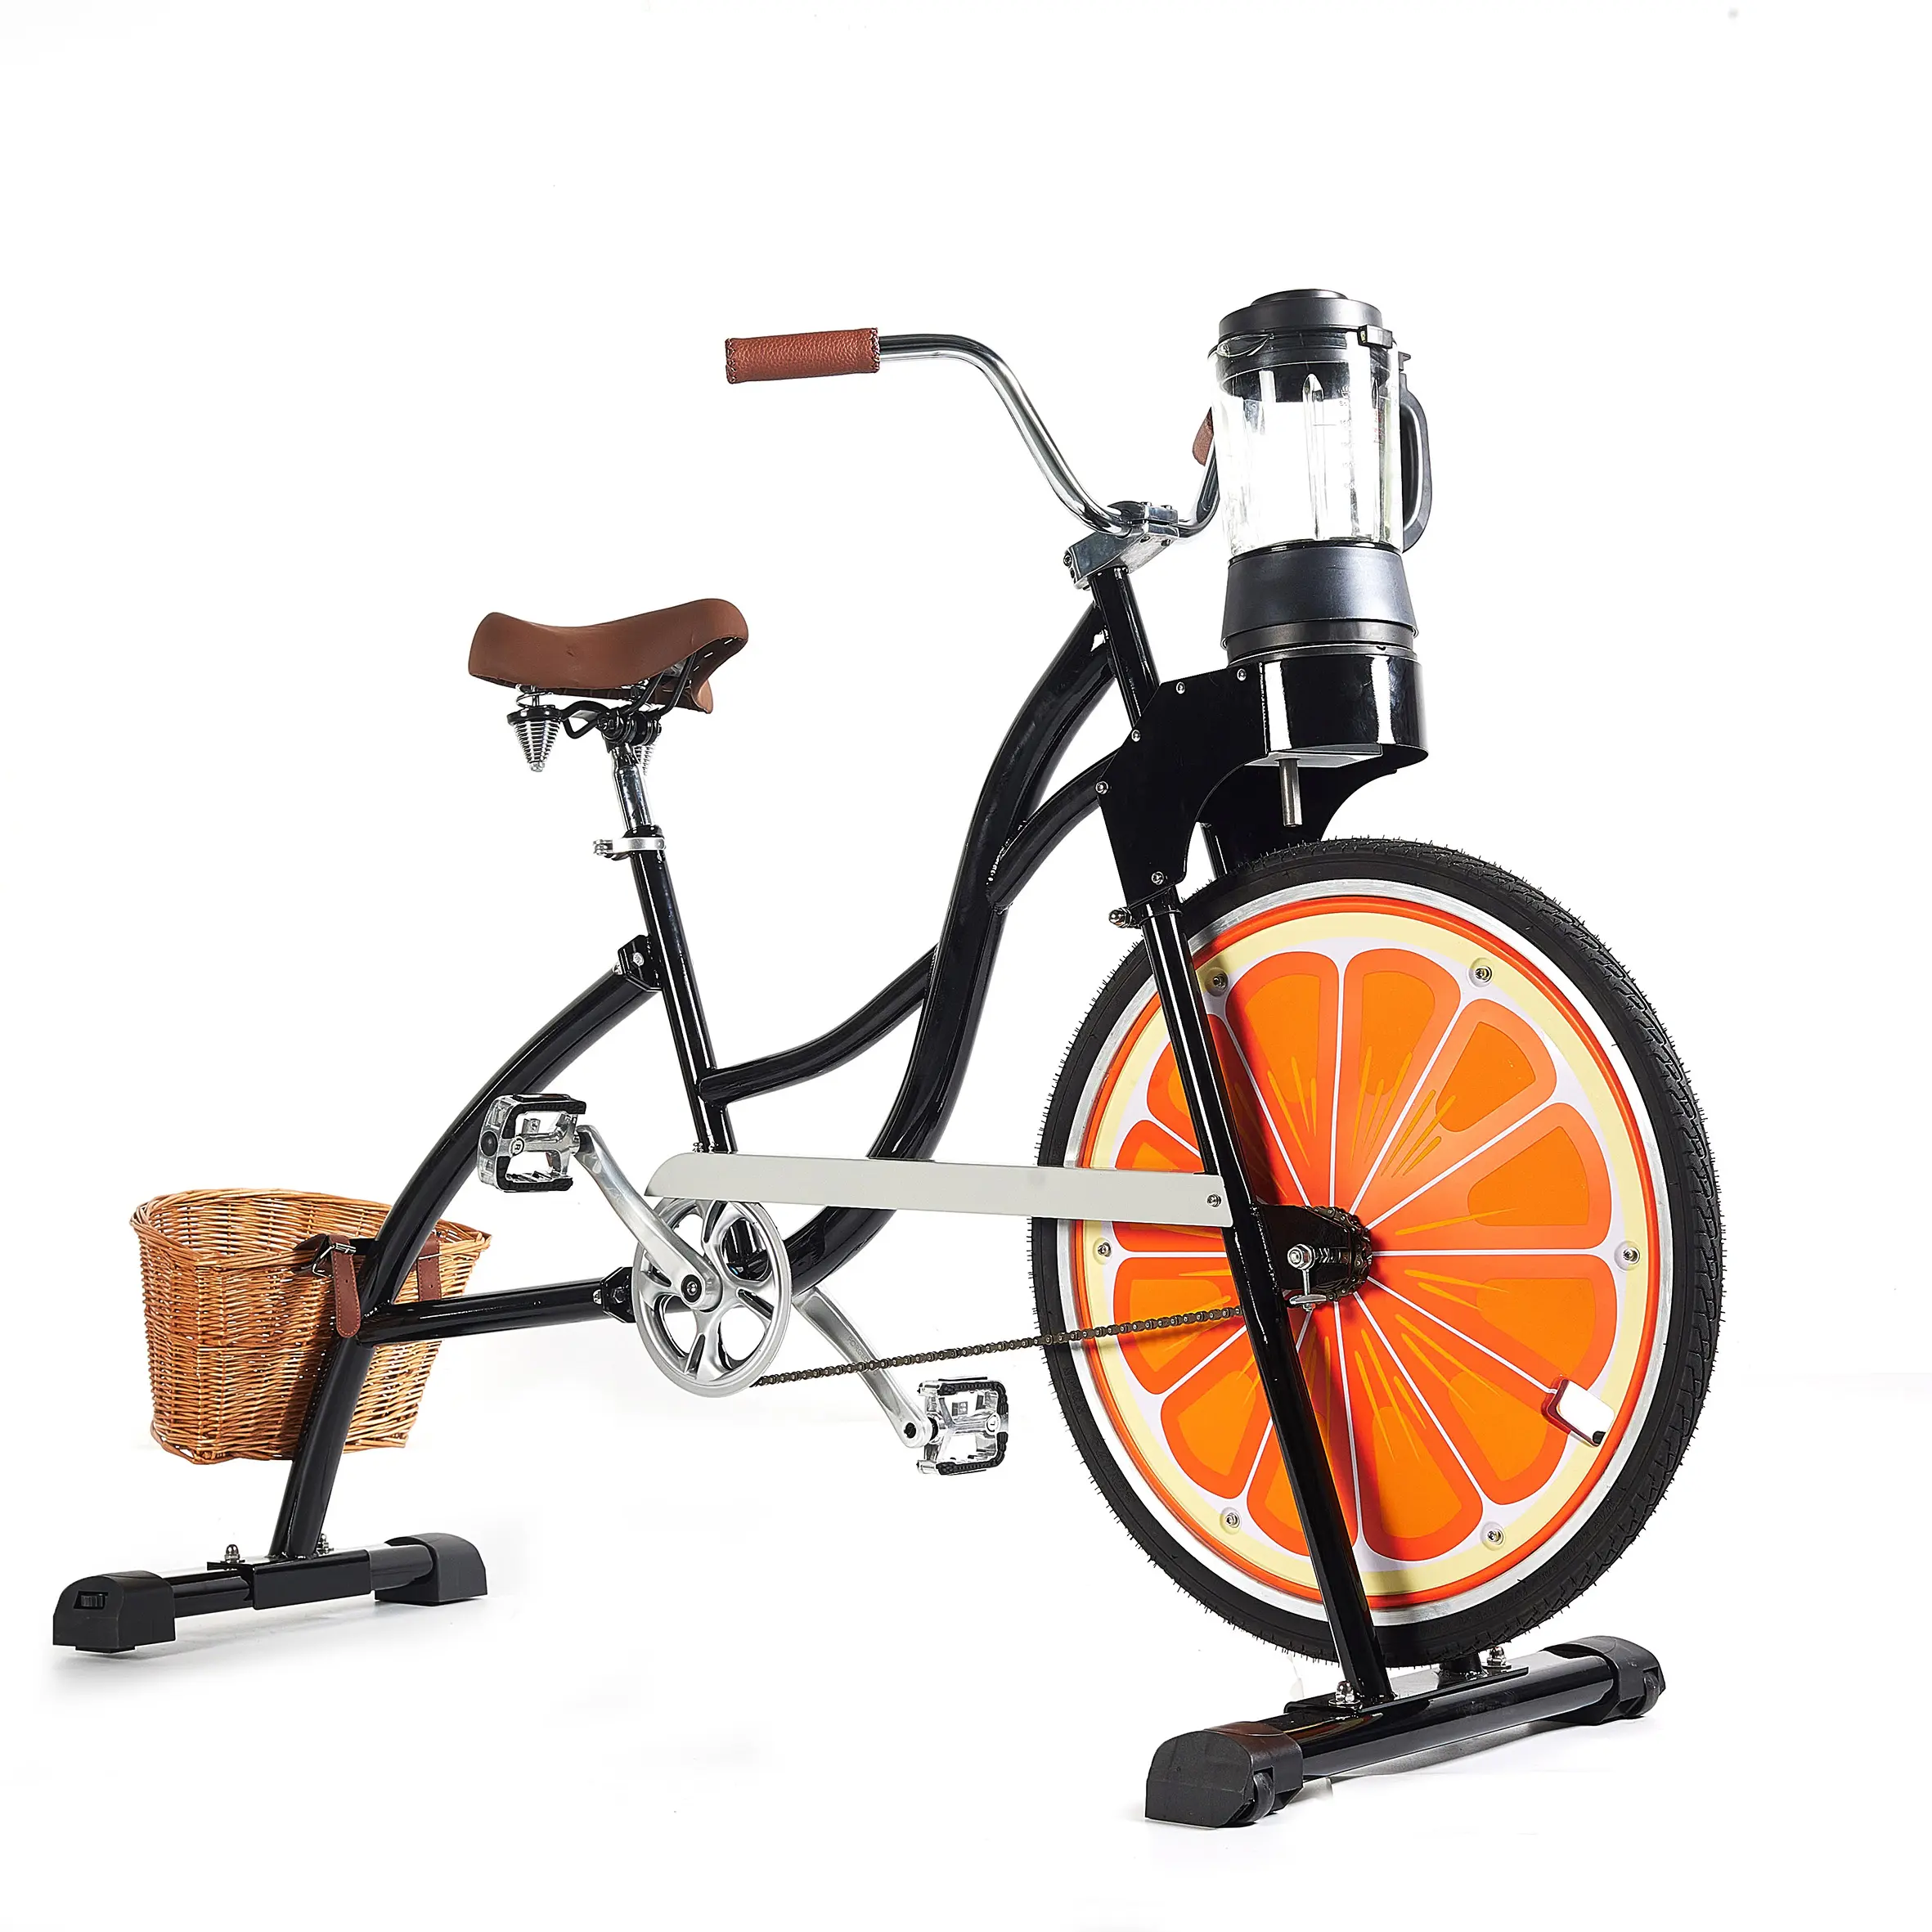 EXI 자전거 기계 고정 기어 광고 블랙 콜드 프레스 시력 볼 펄퍼 야채 과일 페달 자전거